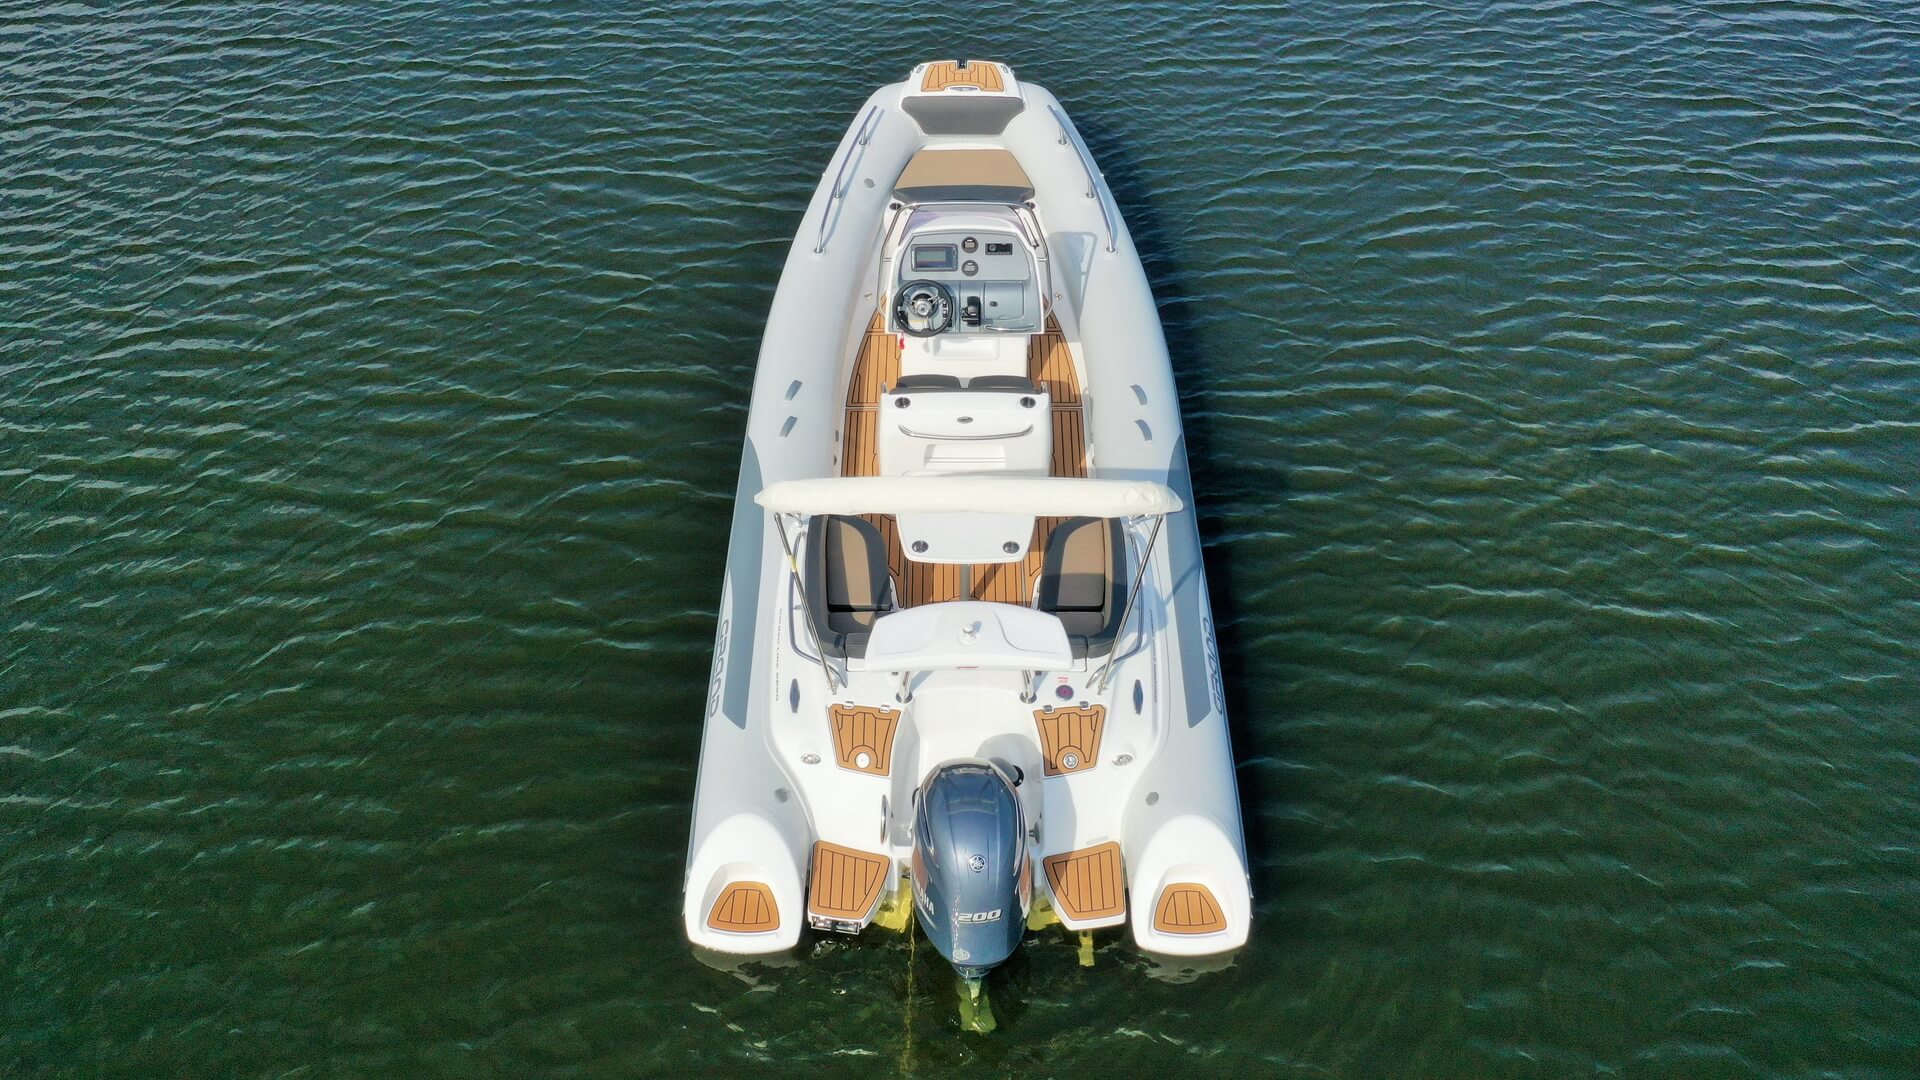 Надувная лодка с жестким дном GRAND Golden Line G650LF, Надувная лодка GRAND Golden Line G650LF, GRAND Golden Line G650LF, GRAND Golden Line G650, GRAND G650LF, GRAND G650, Надувная лодка GRAND, Надувная лодка ГРАНД, RIB лодка, стеклопластиковая лодка с надувными баллонами, Надувная лодка с жестким дном, RIB, Rigid Inflatable Boats